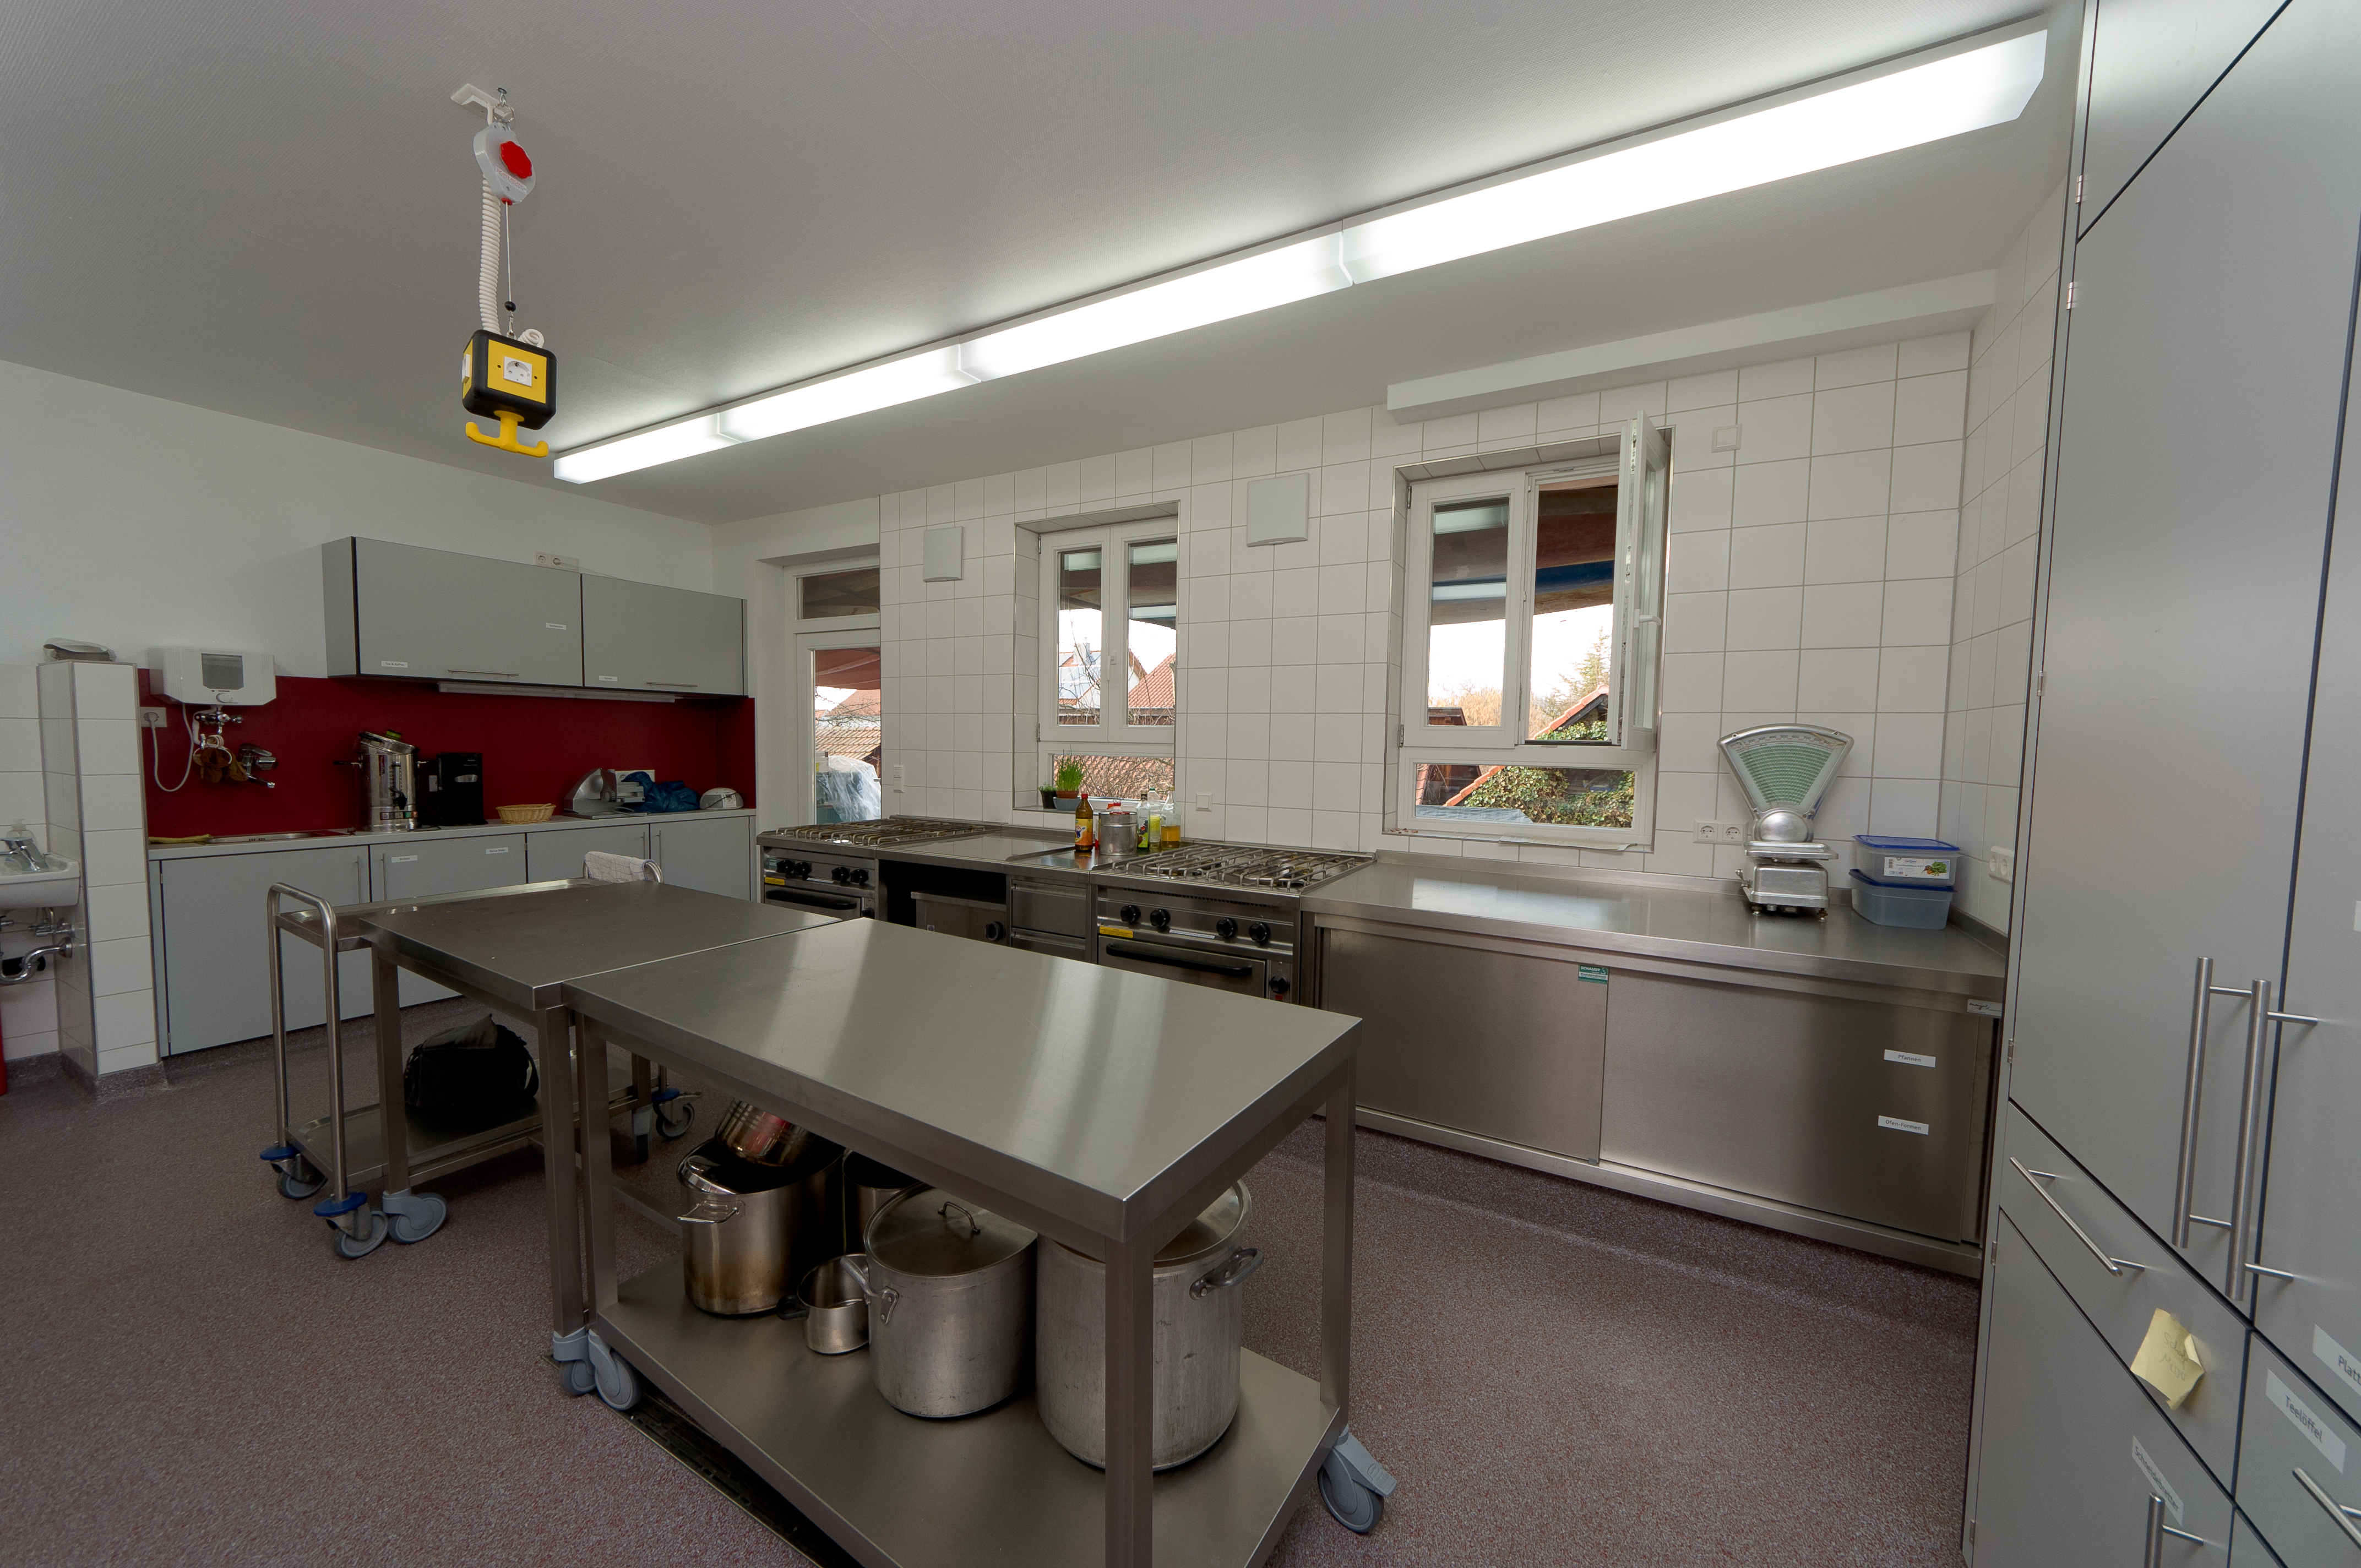 Küche in der Jugendbildungstette des BDP in Kleinbettlingen.